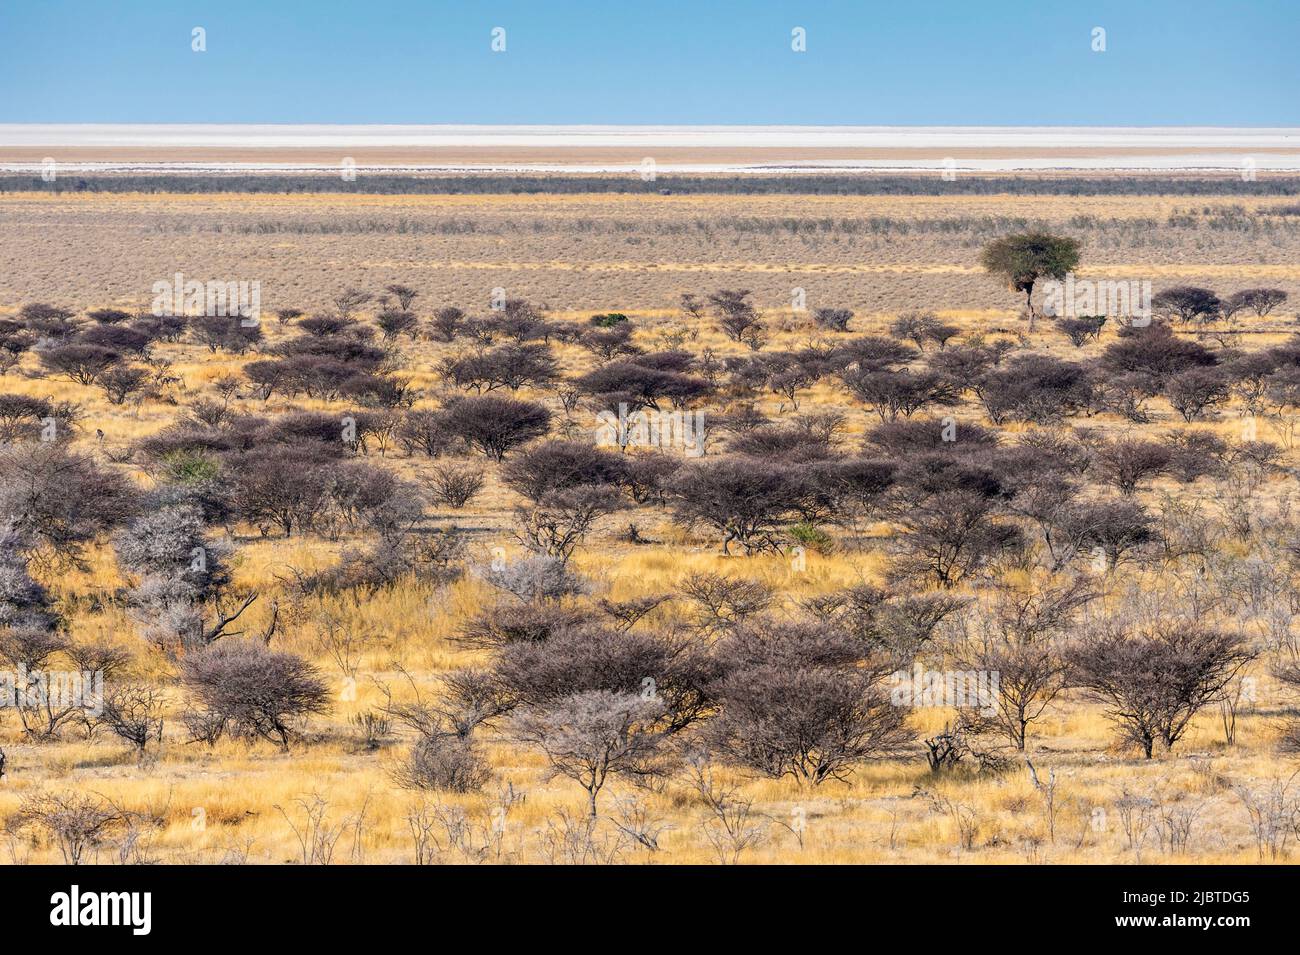 Namibie, région de Kunene, parc national d'Etosha, non loin du camp d'Okaukuejo, paysage de savane boisée et de la casserole, vaste salin Banque D'Images